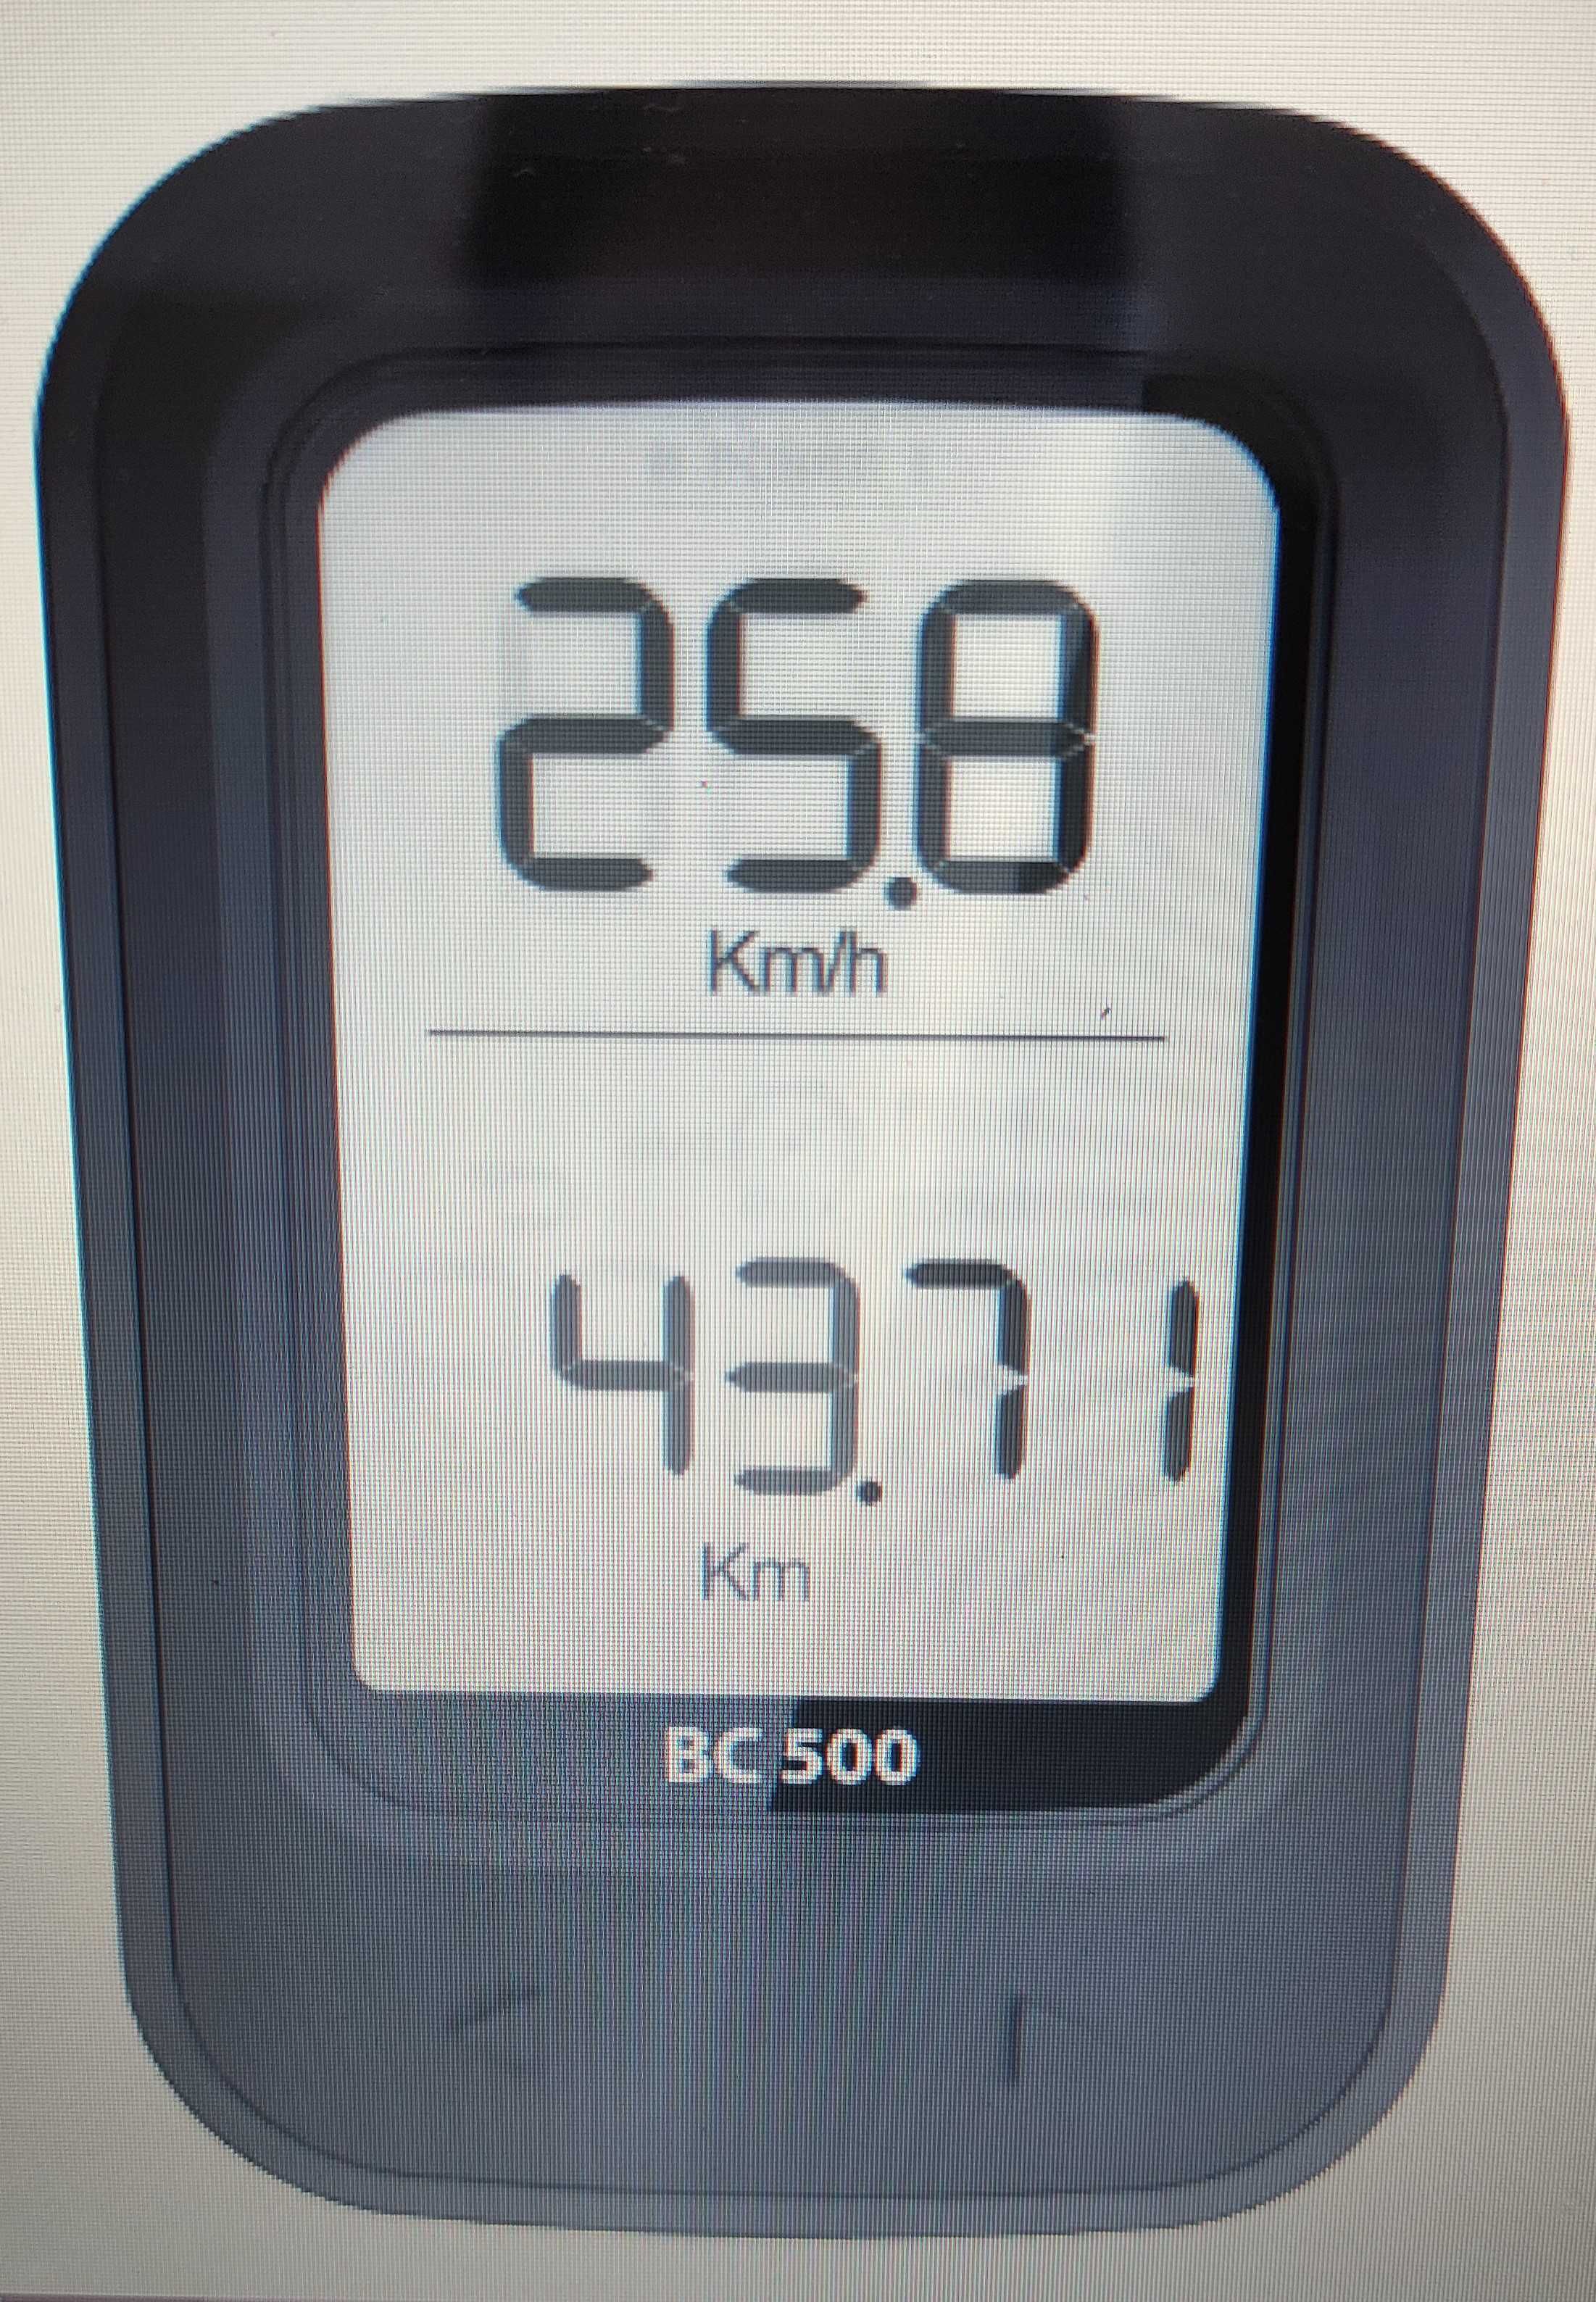 Conta quilómetros para bicicleta -  1 BC 500 / 1 BC 150